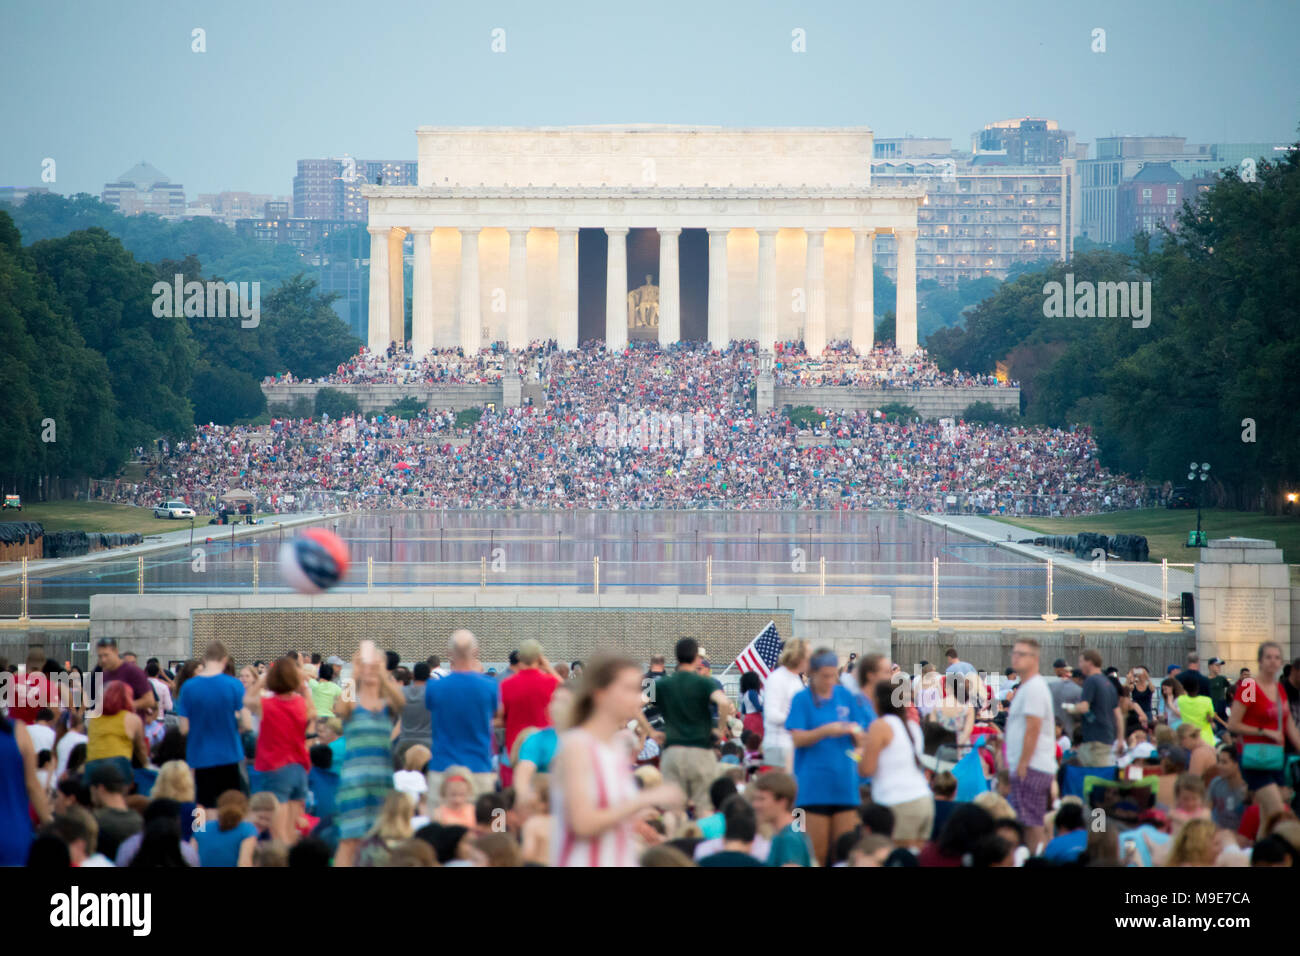 Washington DC, USA - Le 04 juillet 2017, le point de vue du Washington monument à la Lincoln Memorial avant et au cours de la 4ème de juillet d'artifice. Banque D'Images